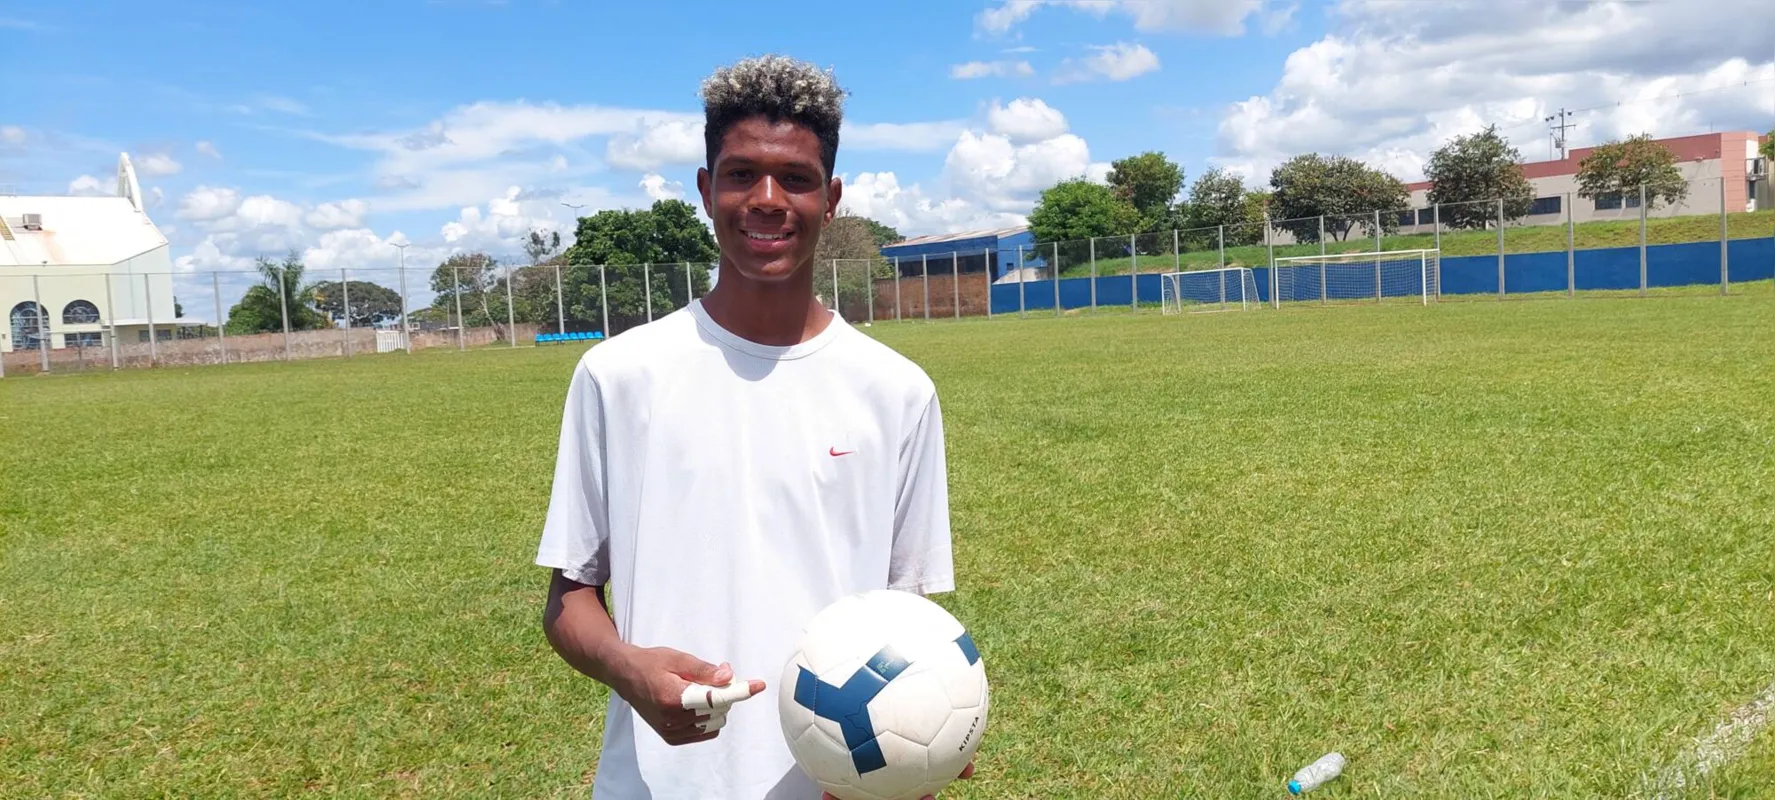 João Pedro Feitosa vem se destacando como goleiro: “Quero agradecer a minha mãe, que sempre me apoiou”